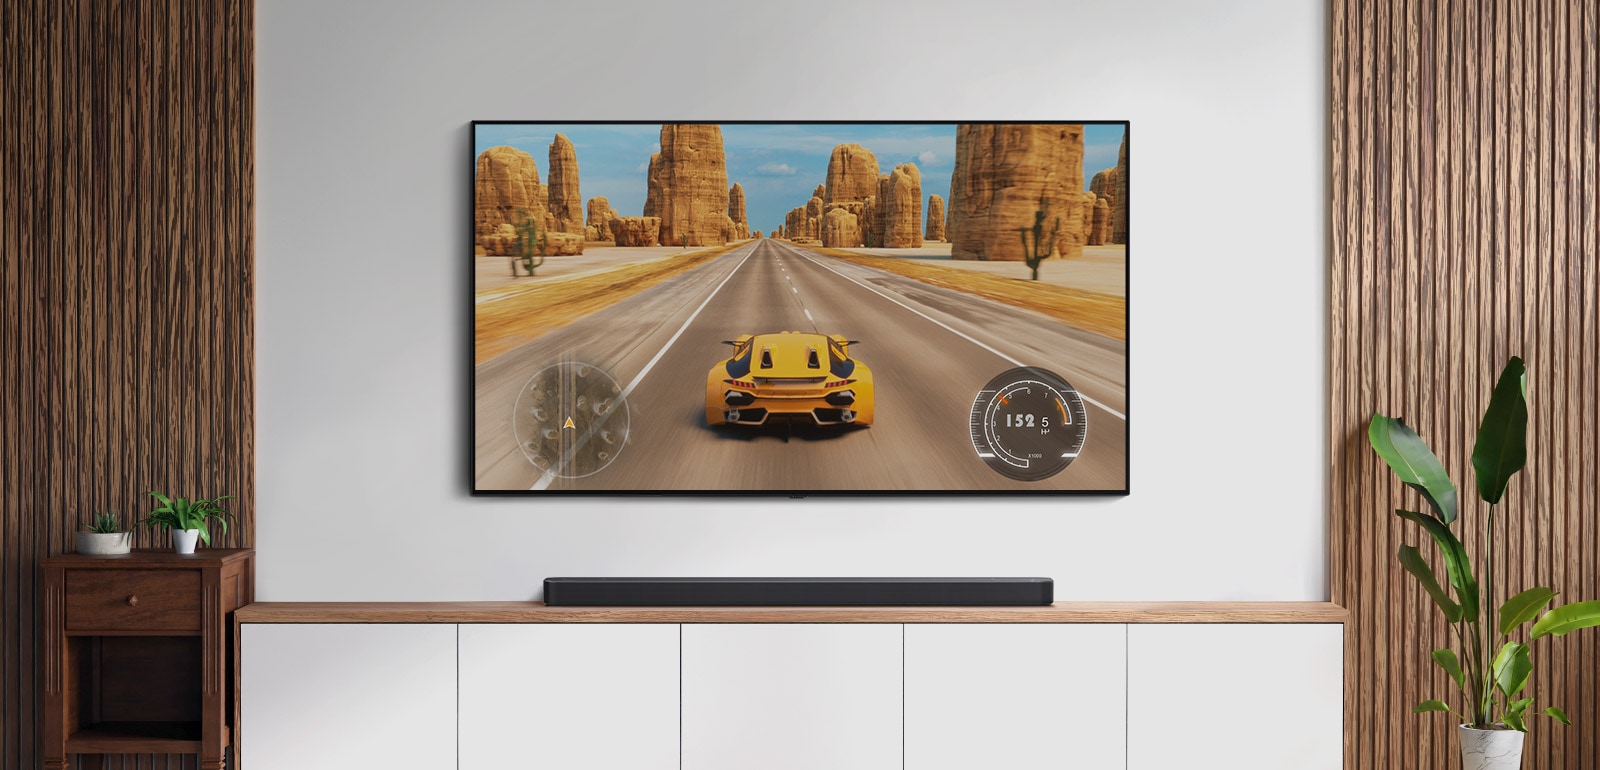 Obývací pokoj s TV a soundbarem. Na TV obrazovce je závodní auto. (přehrát video)